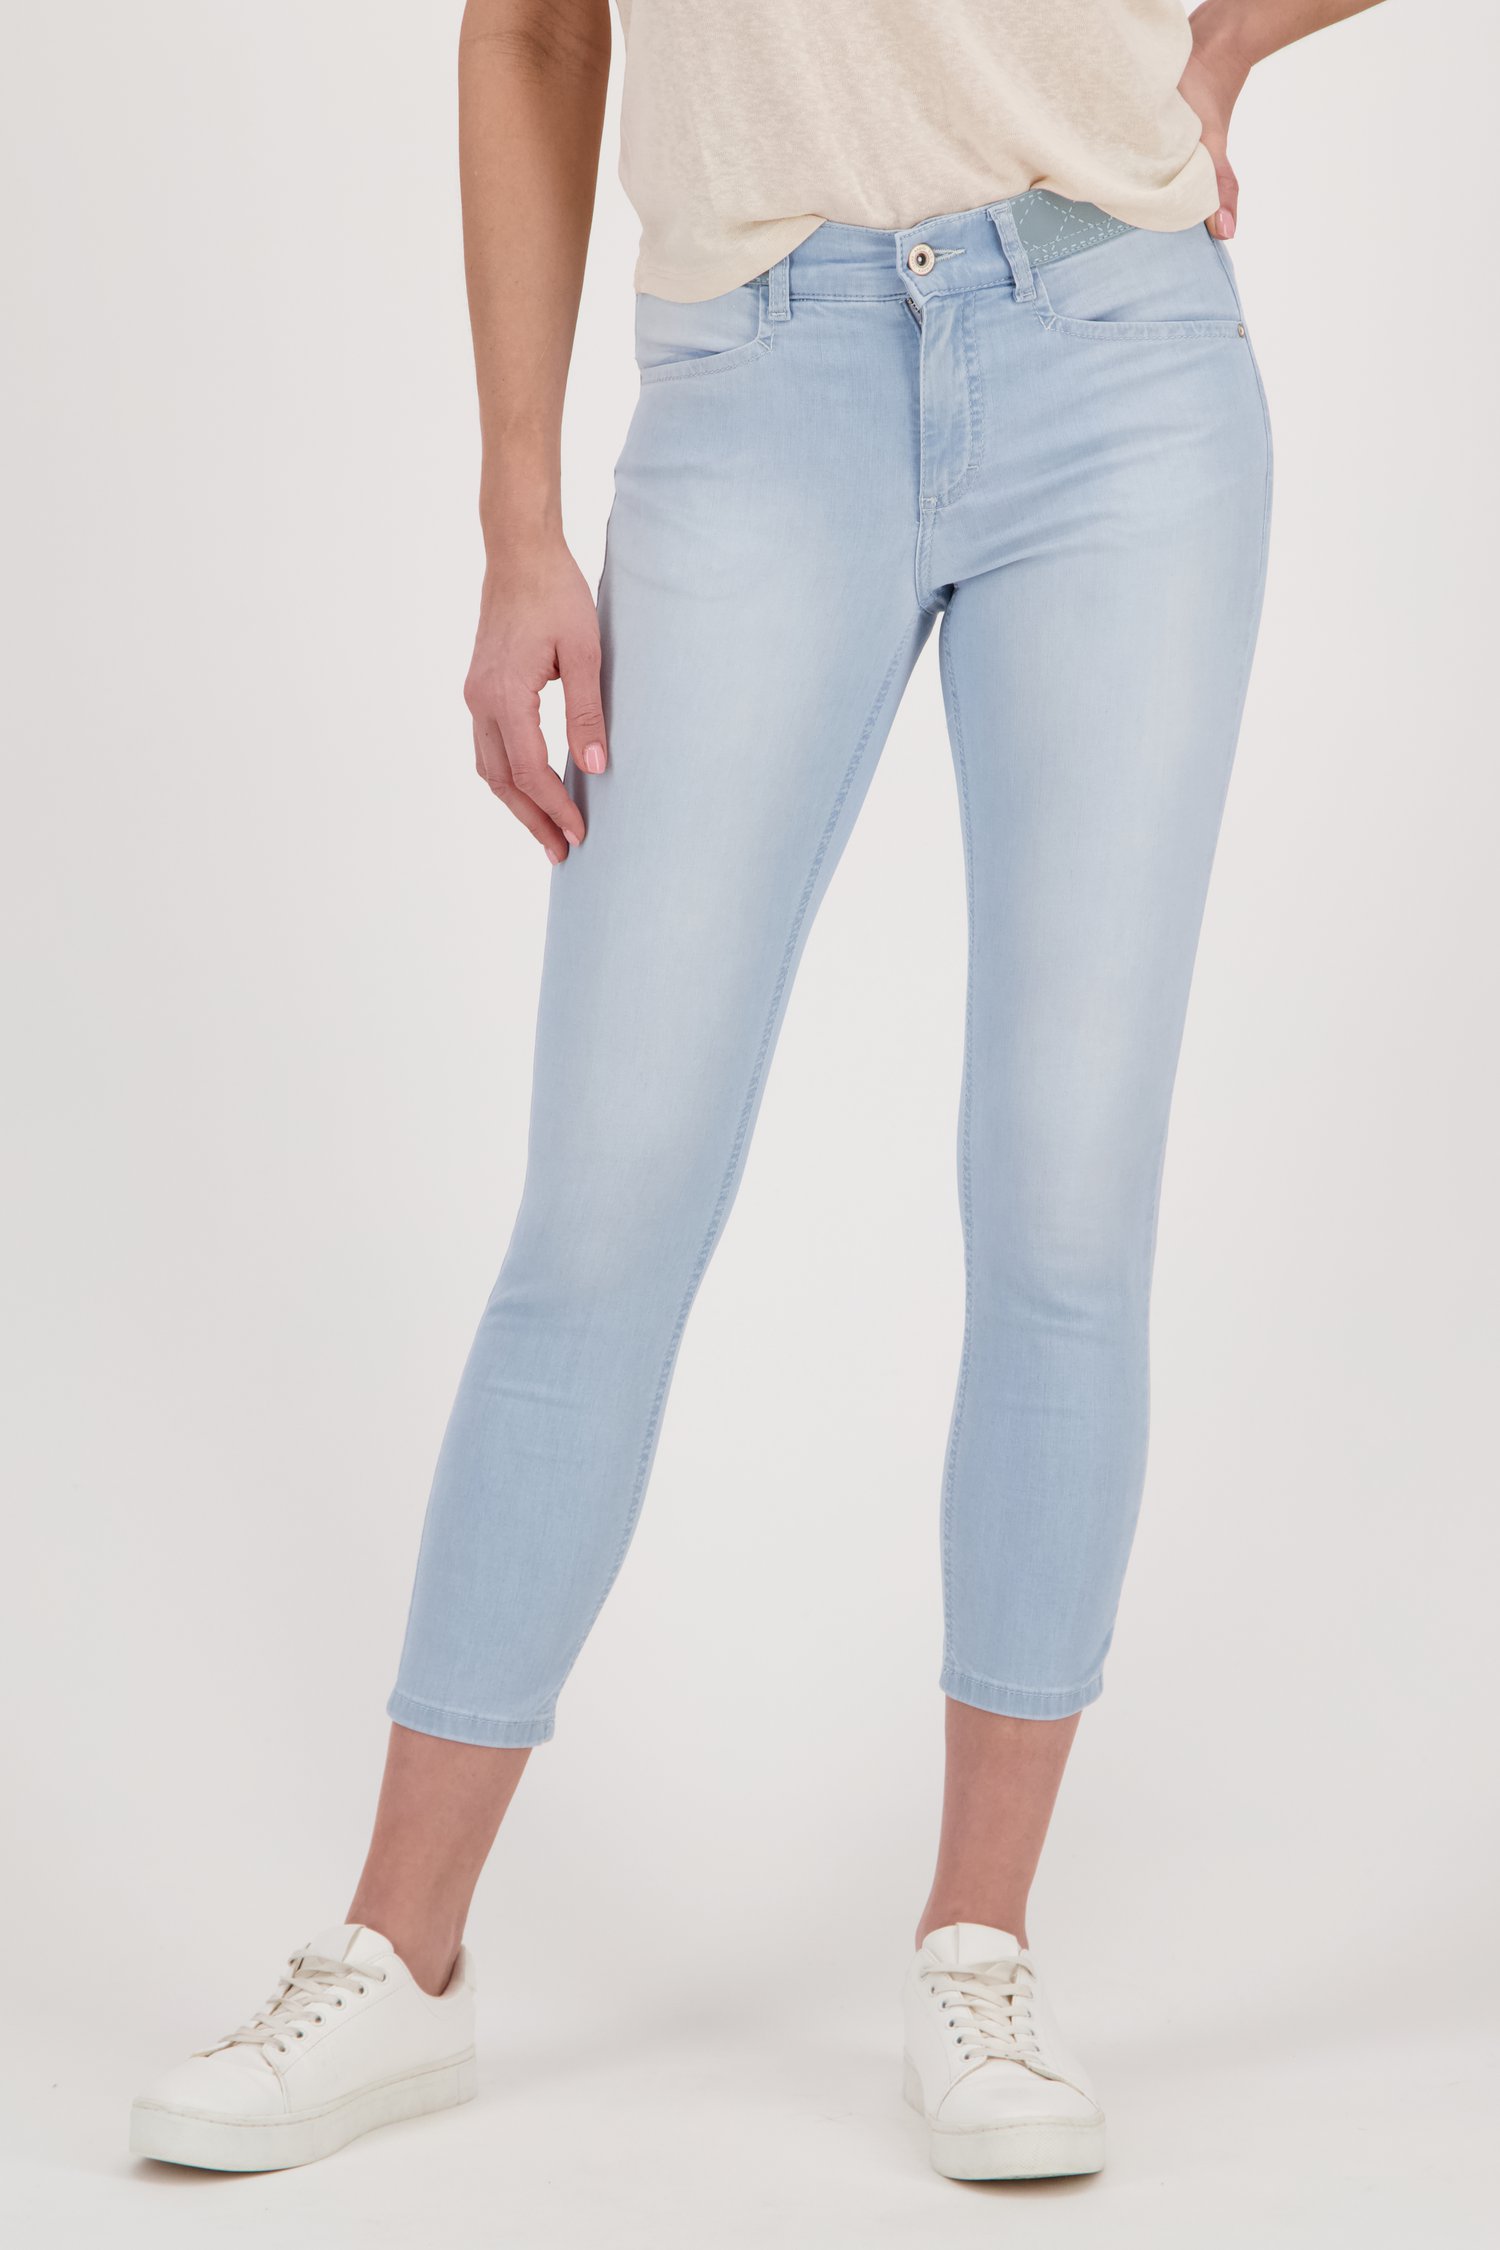 Niet meer geldig Beschrijven periode Lichtblauwe jeans met elastische taille - slim fit van Angels | 9580566 | e5